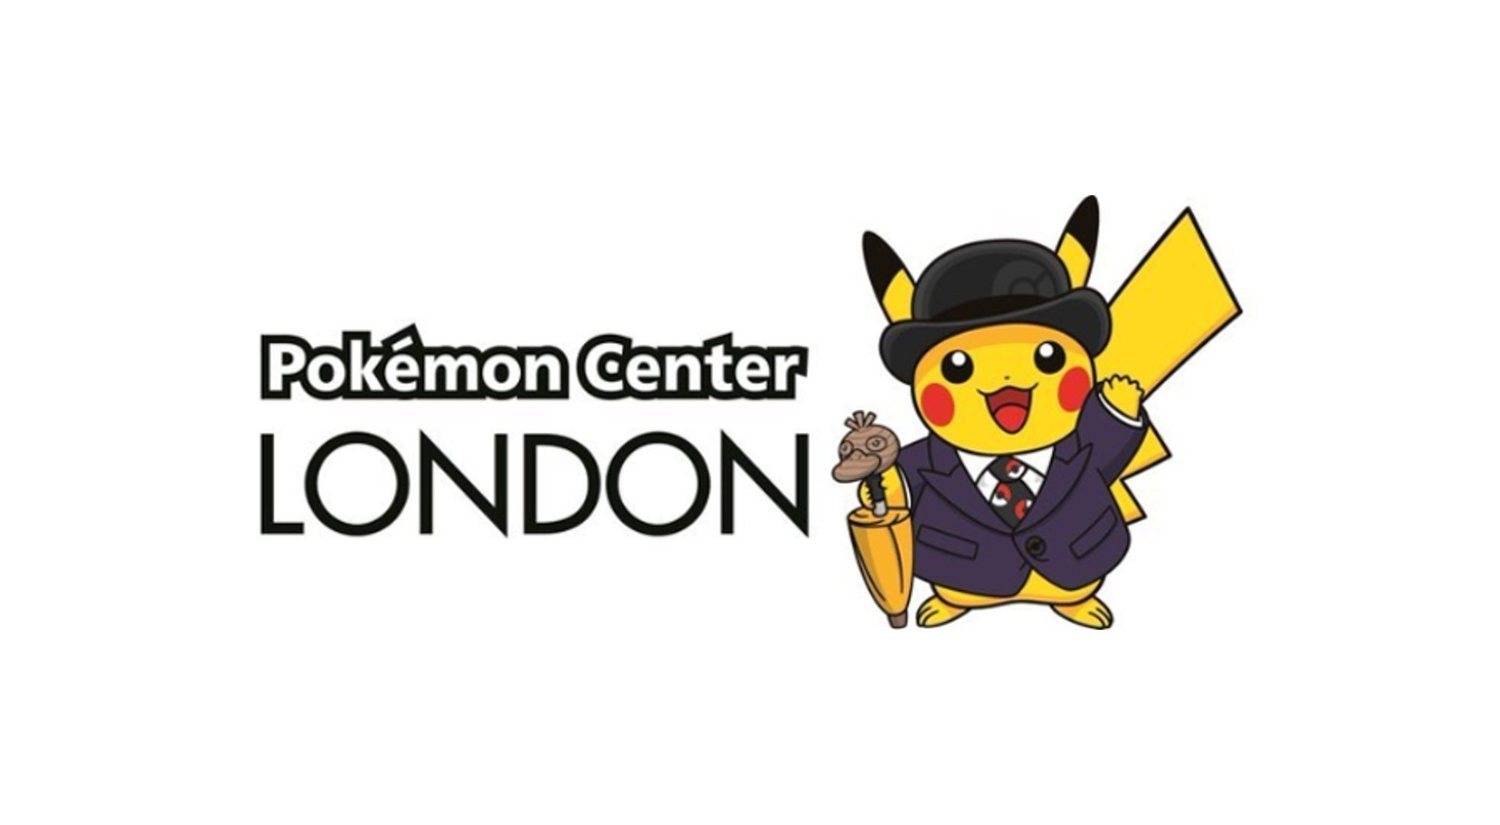 Londres, sede de un nuevo Pokémon Center (por tiempo limitado)